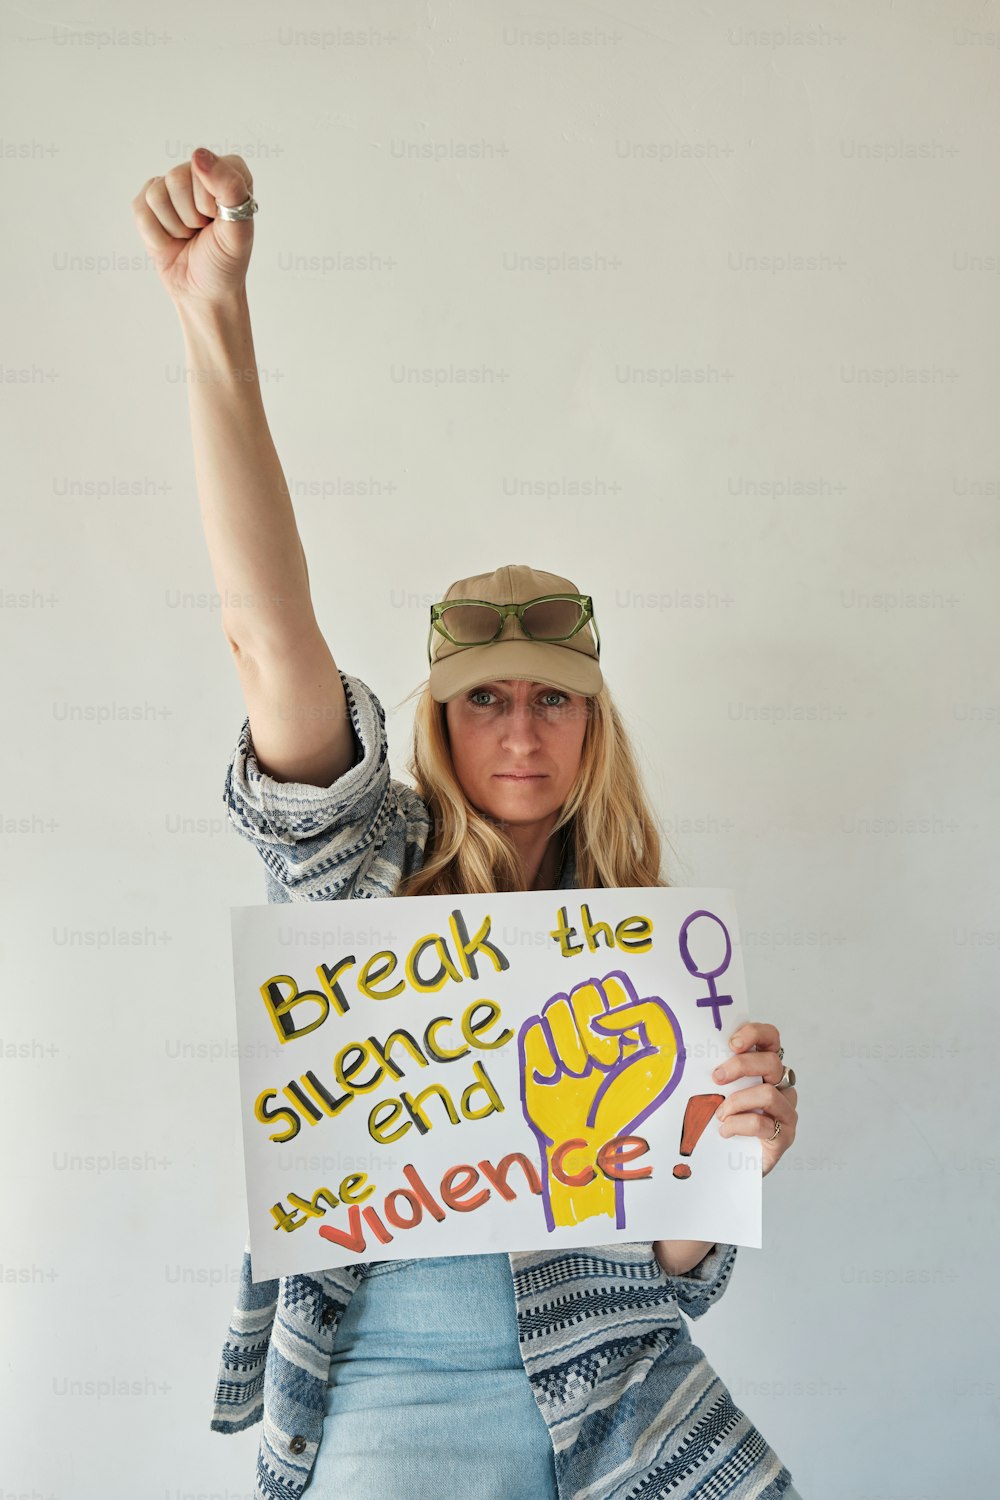 Eine Frau, die ein Schild mit der Aufschrift "Break the Science" und "Gewalt" hält